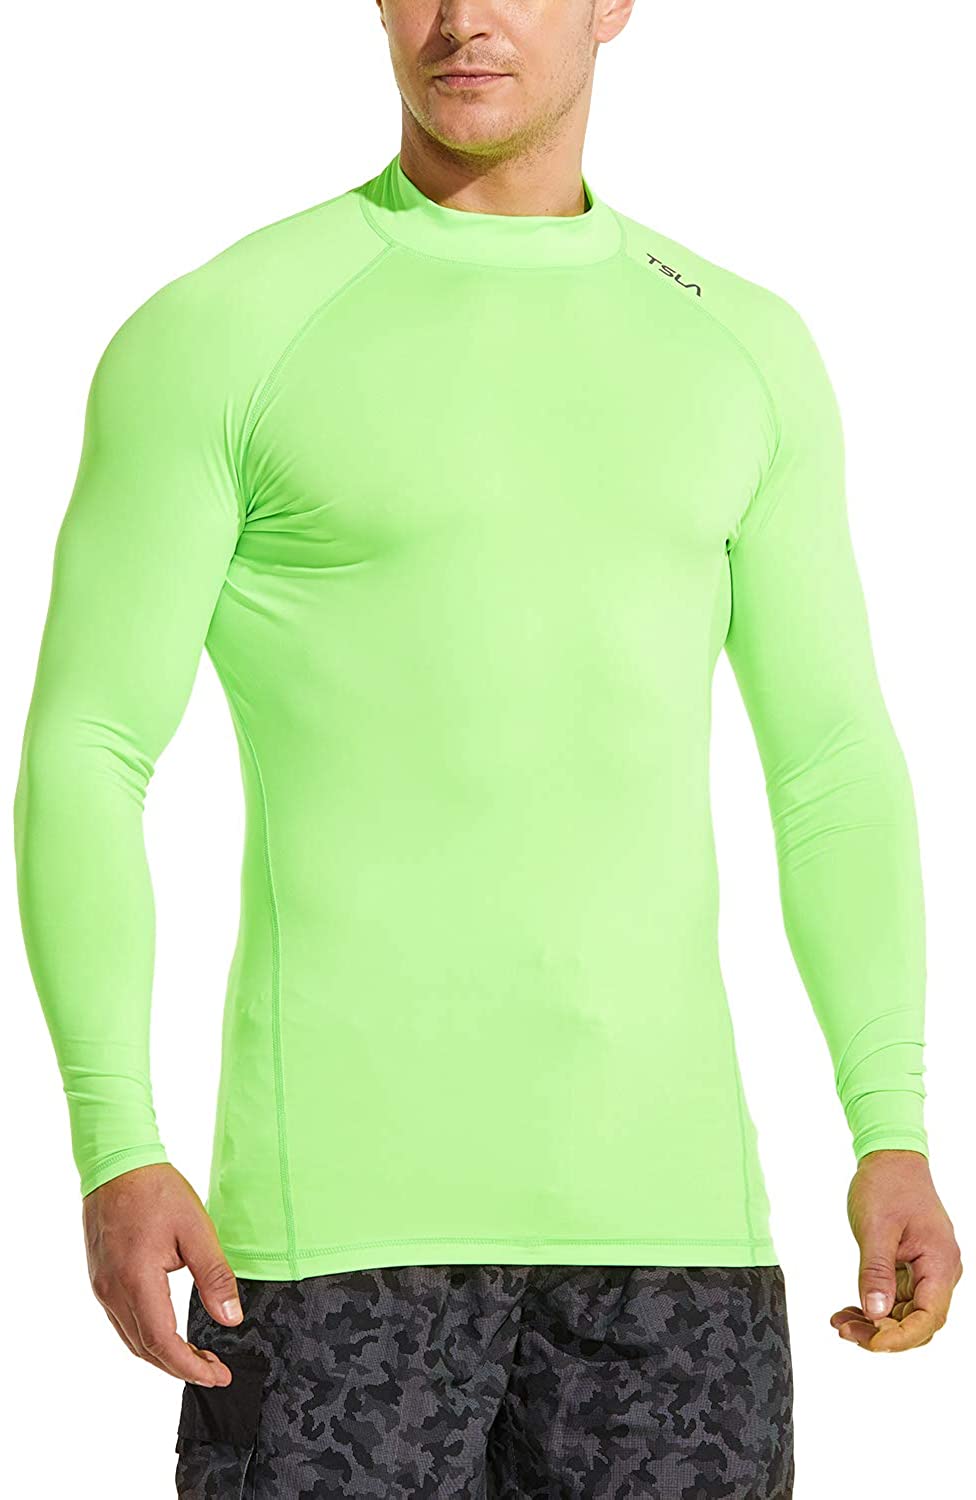 Langarm Rashguard UV/USF Quick-Dry Schwimmshirt TSLA Herren USF 50 auch für Surfen geeignet 